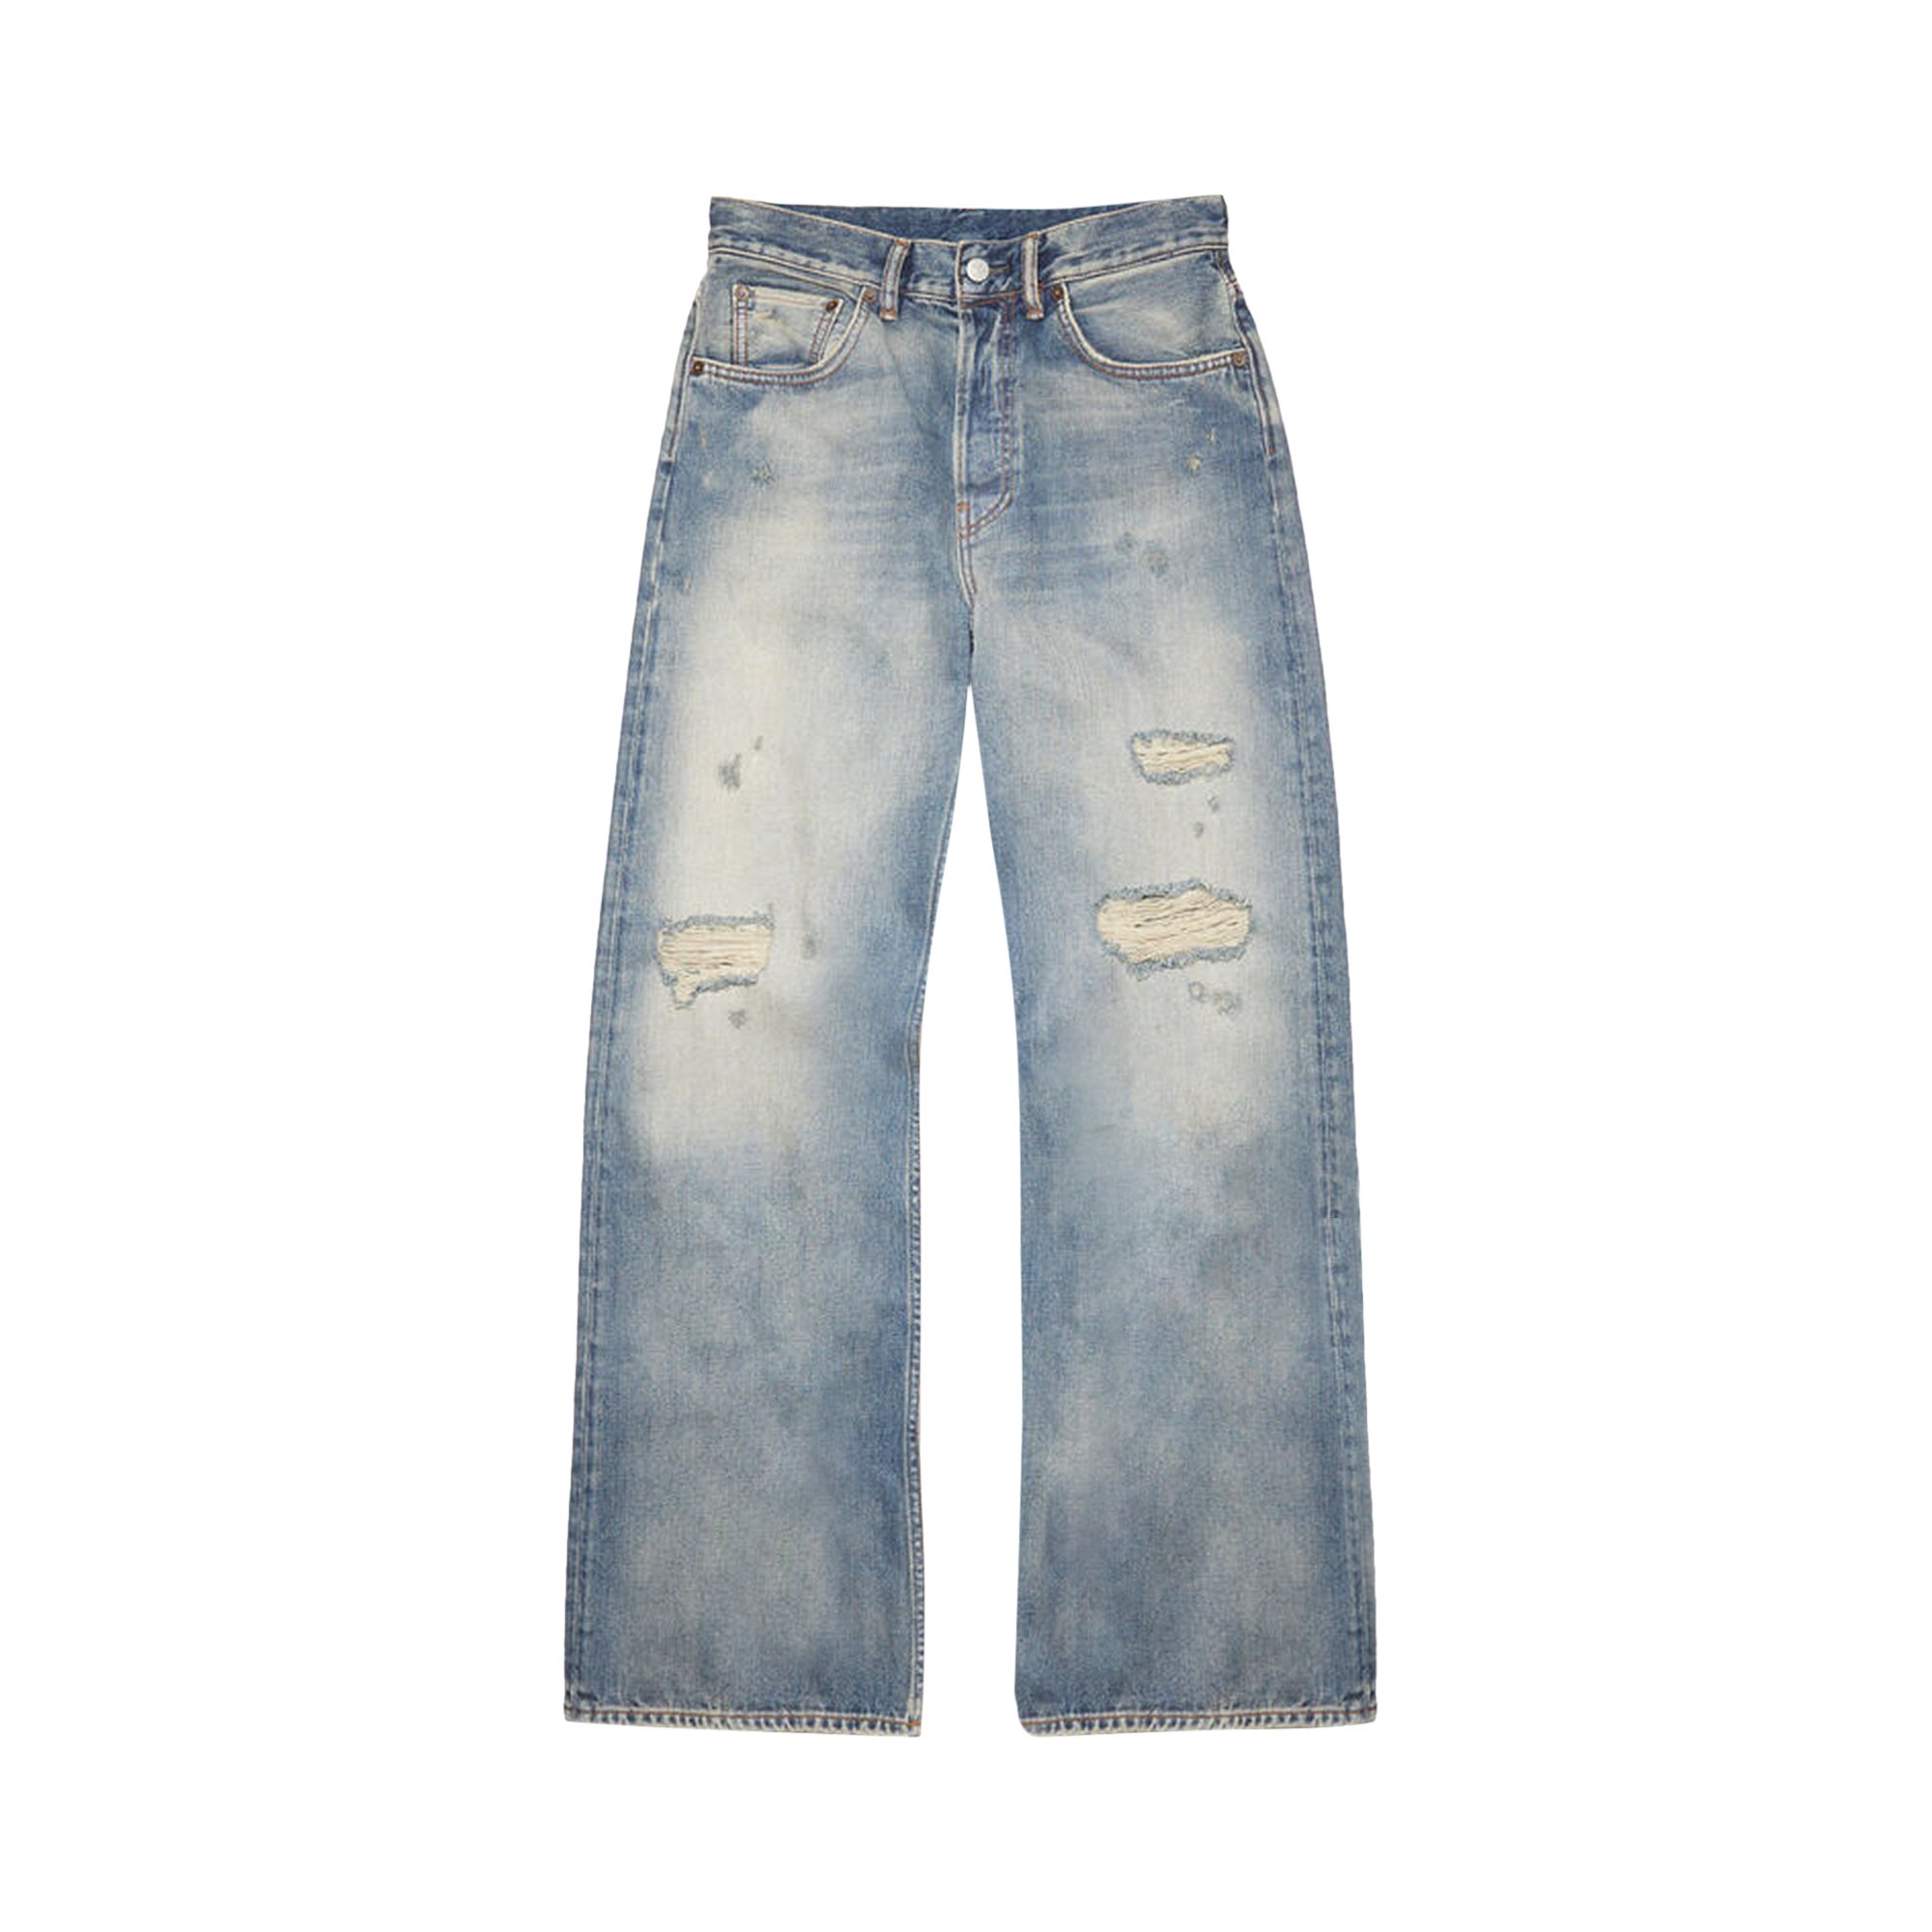 Buy Acne Studios Loose Fit Jeans 'Blue' - A00383 GOAT BLUE | GOAT